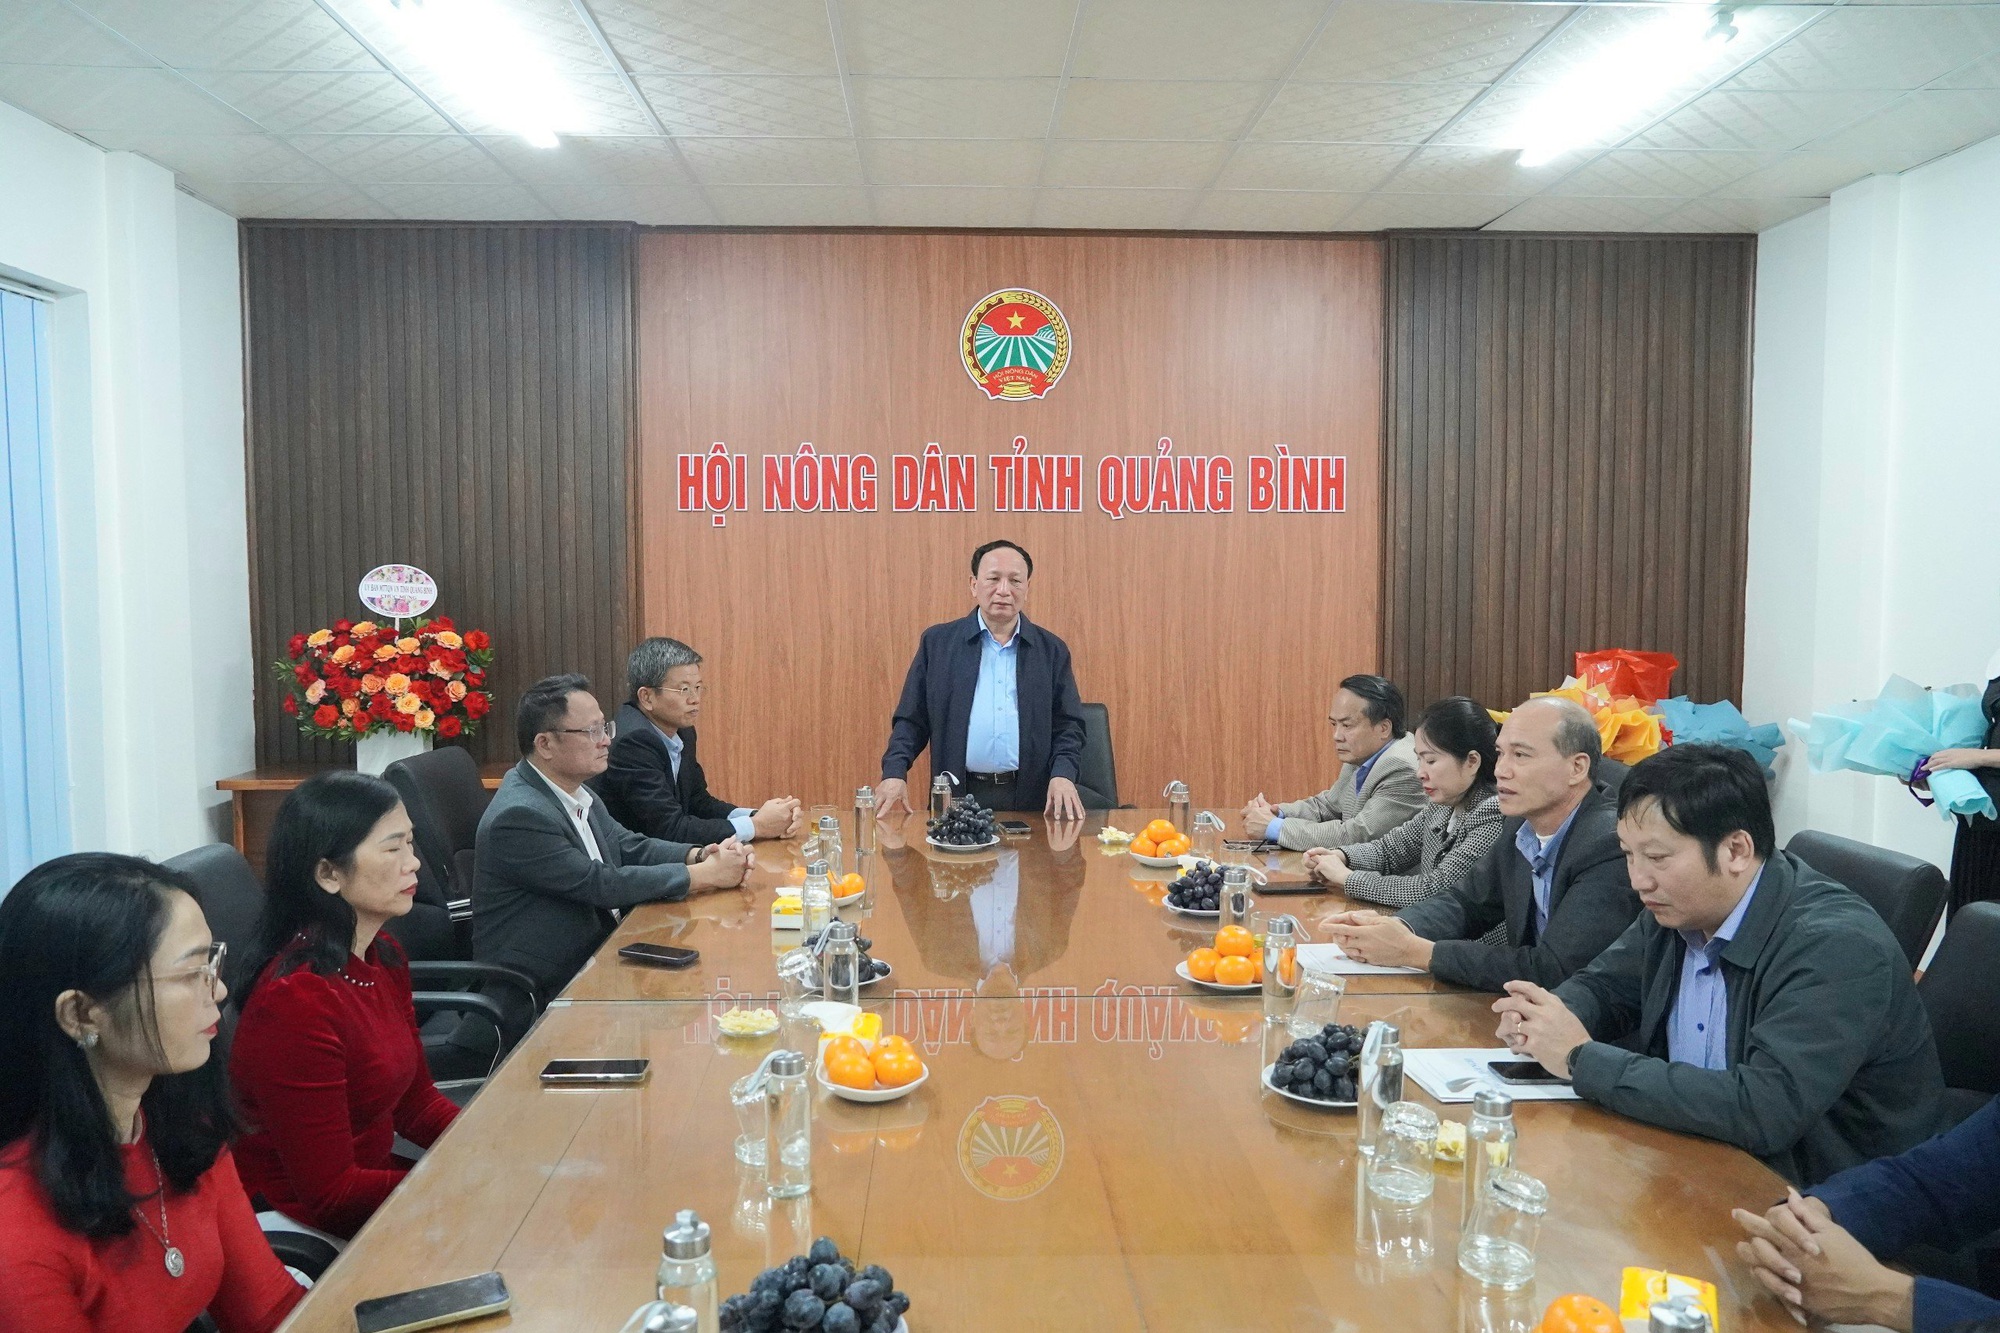 Quảng Bình: Gặp đoàn đại biểu dự Đại hội Hội Nông dân Việt Nam lần thứ VIII - Ảnh 1.